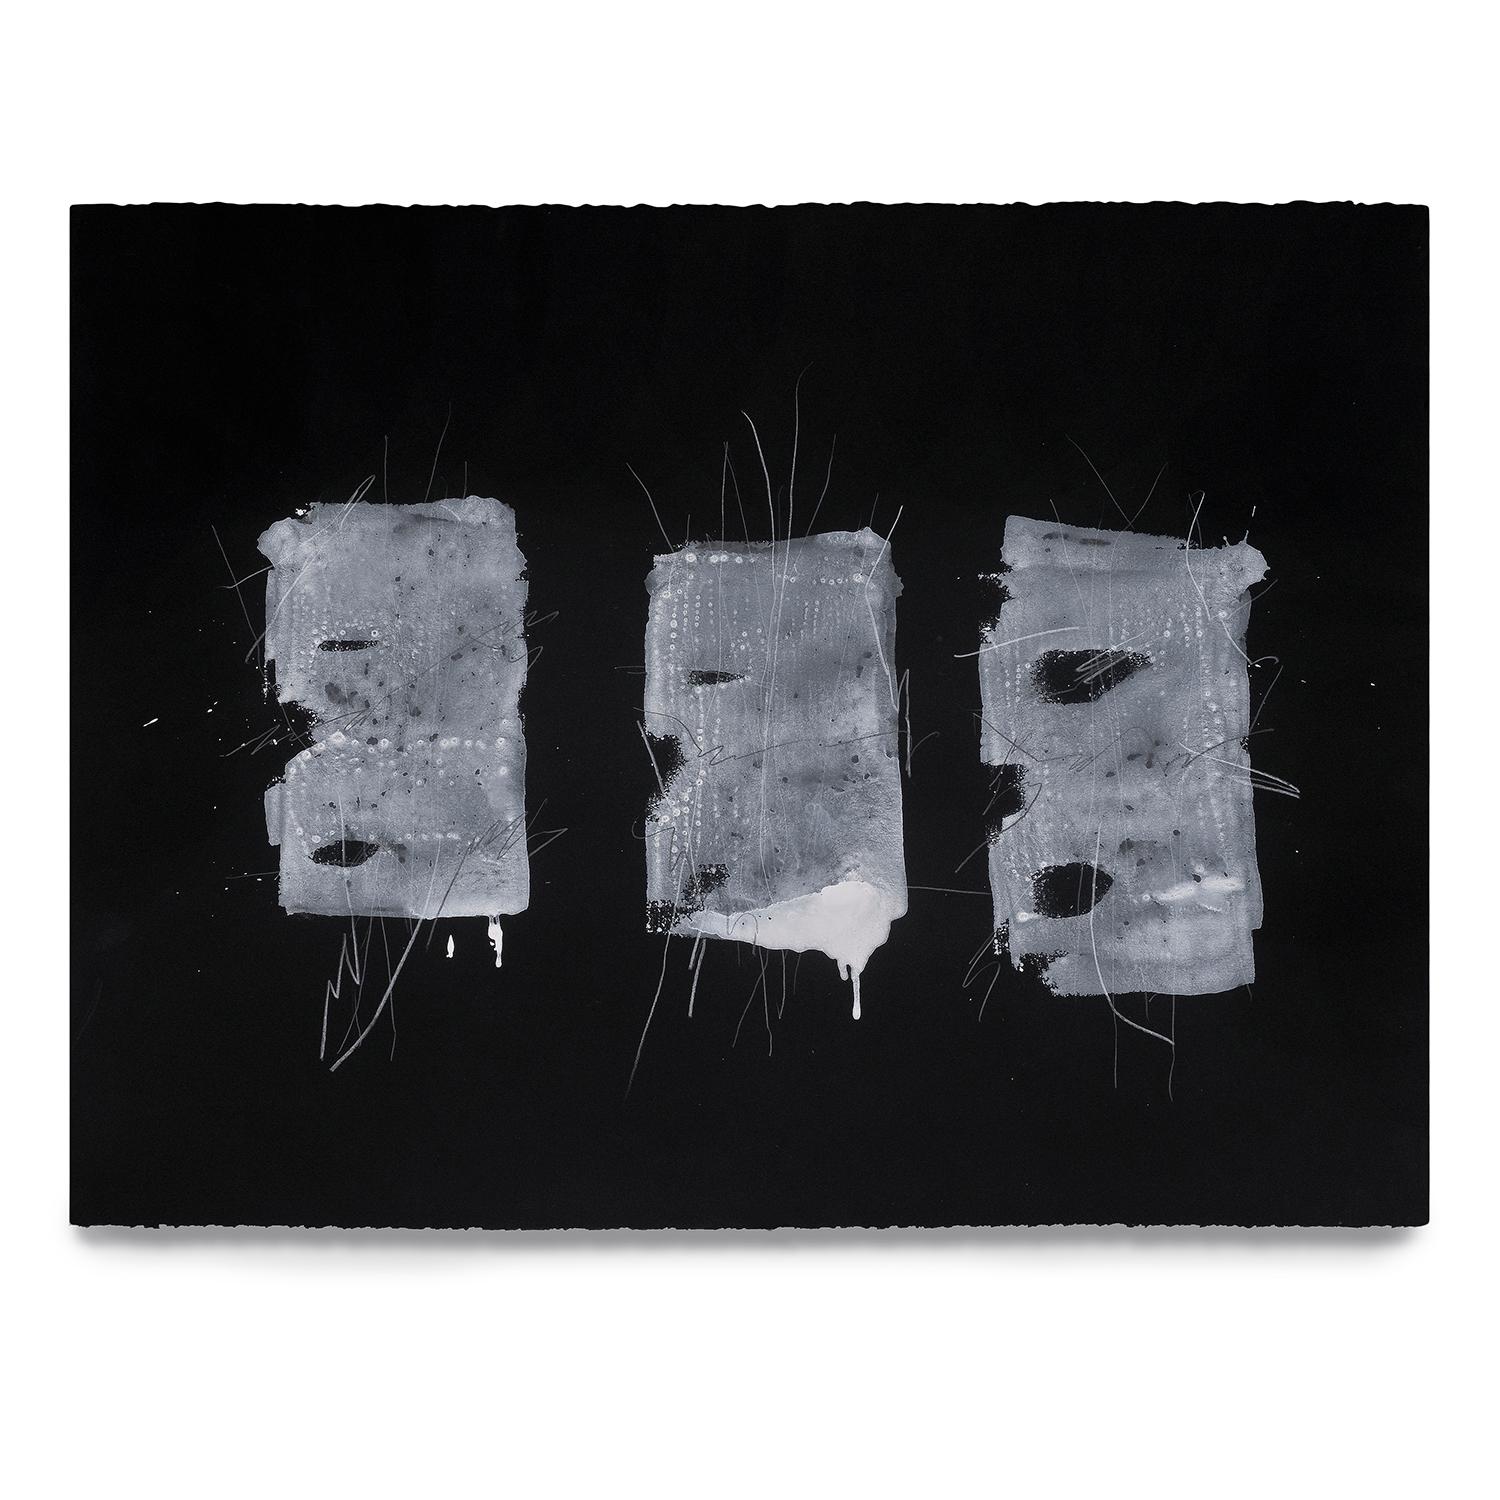 aquarelle, graphite, bâton d'huile sur papier Stonehenge noir 9016
signé par l'artiste